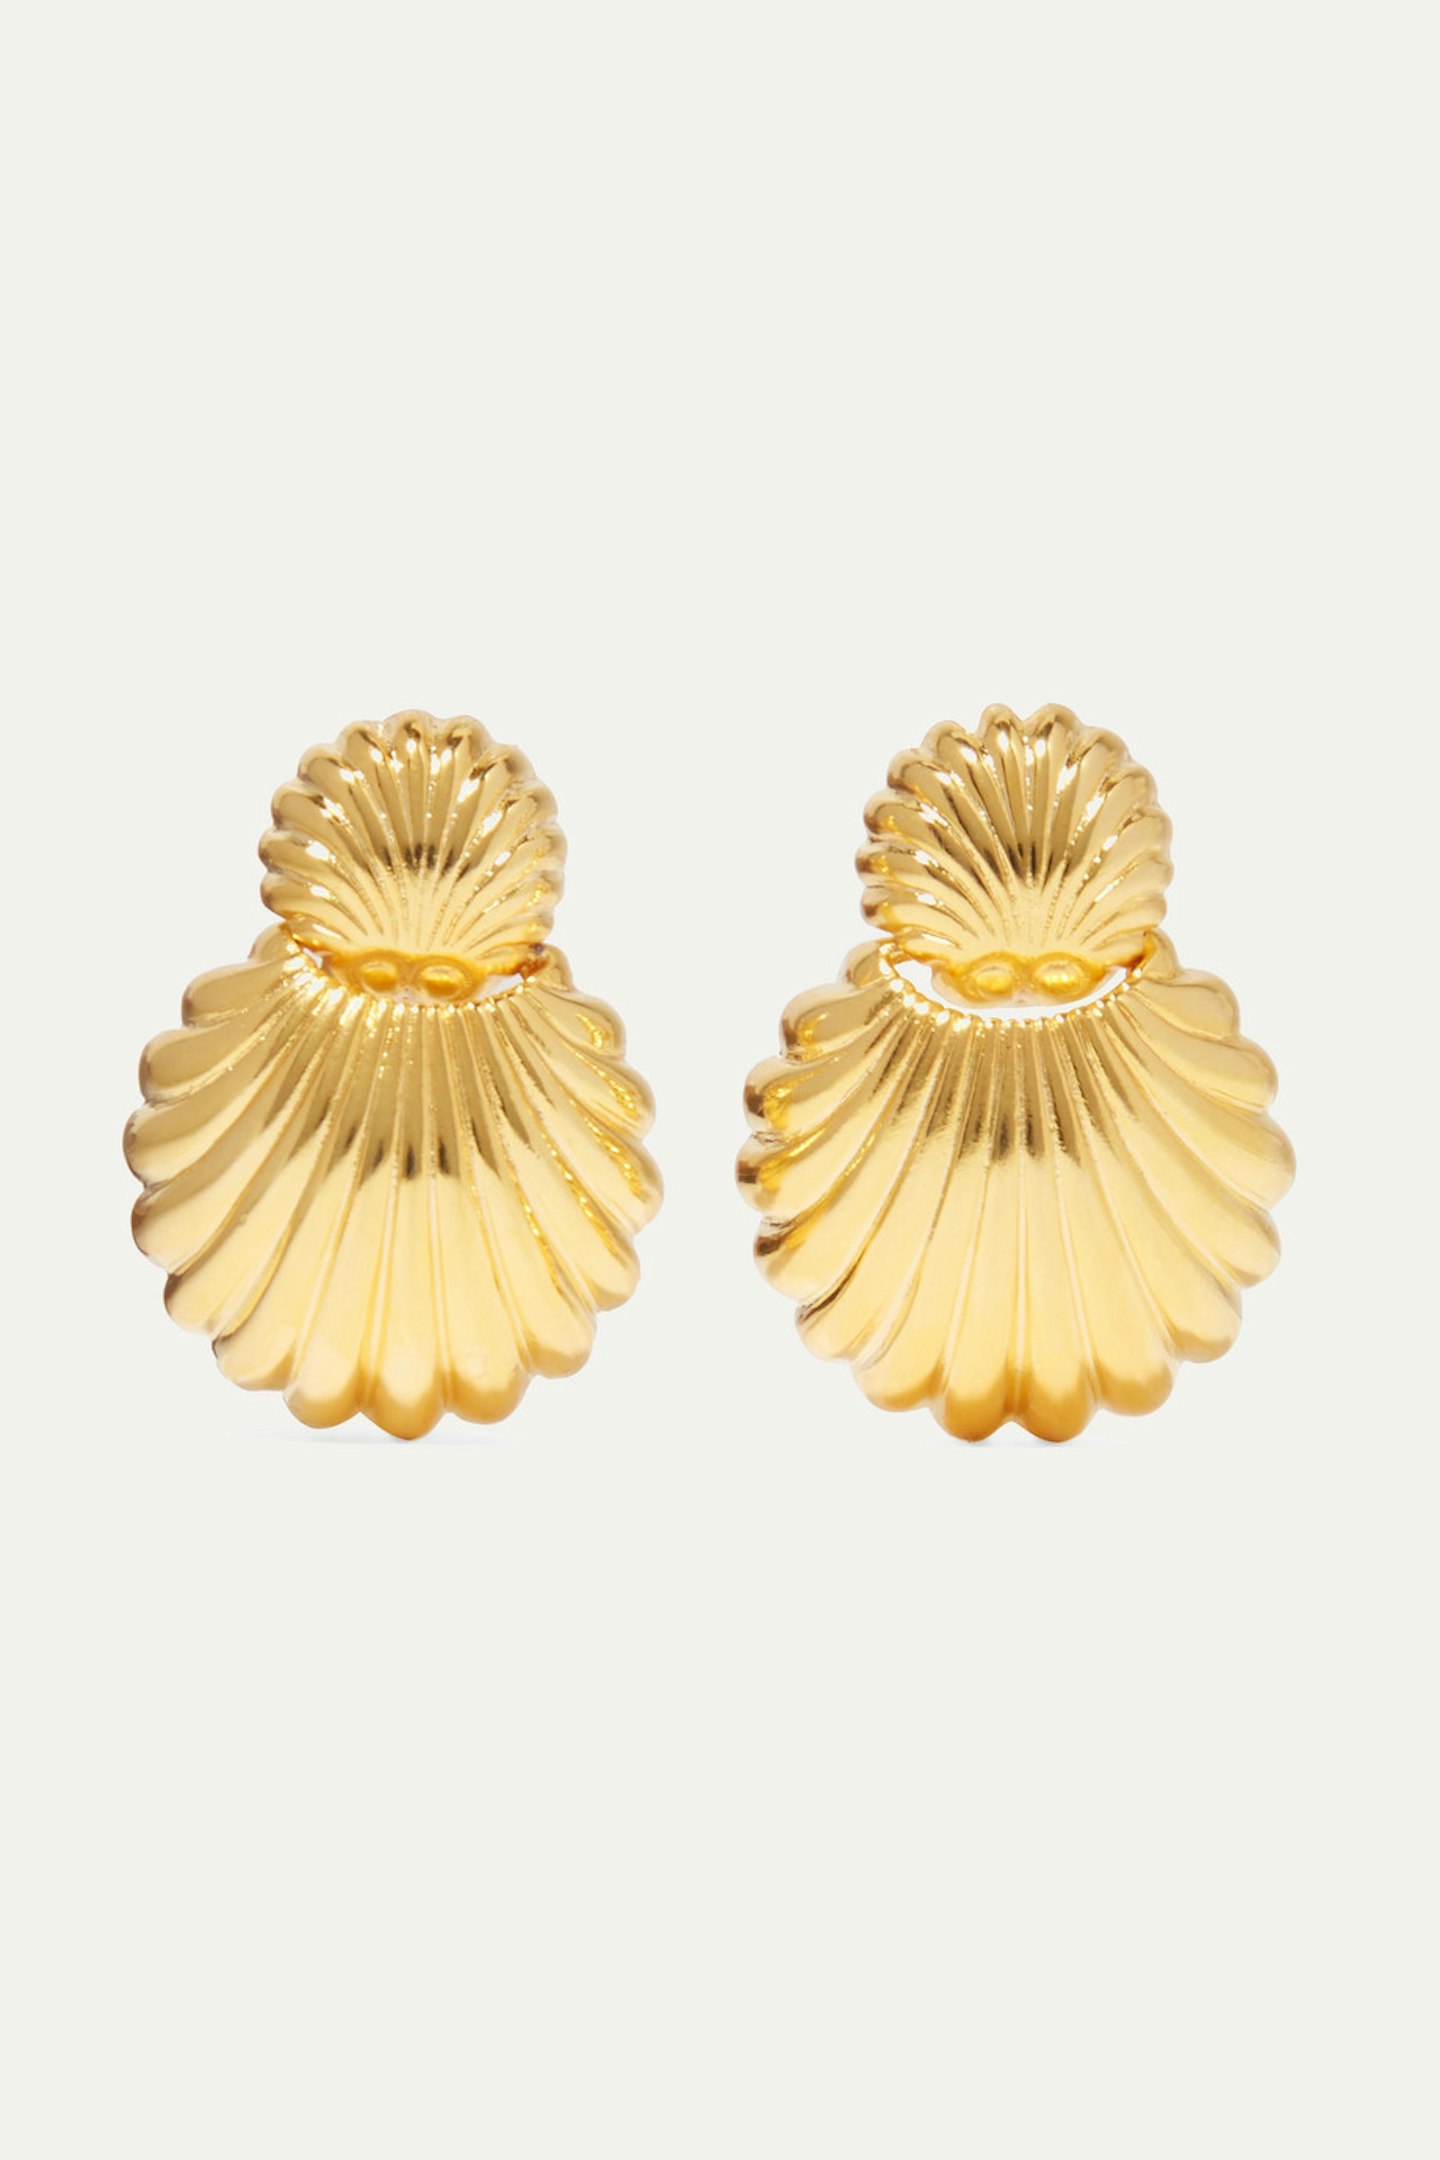 Kenneth Jay Lane, Gold-tone clip earrings, £80